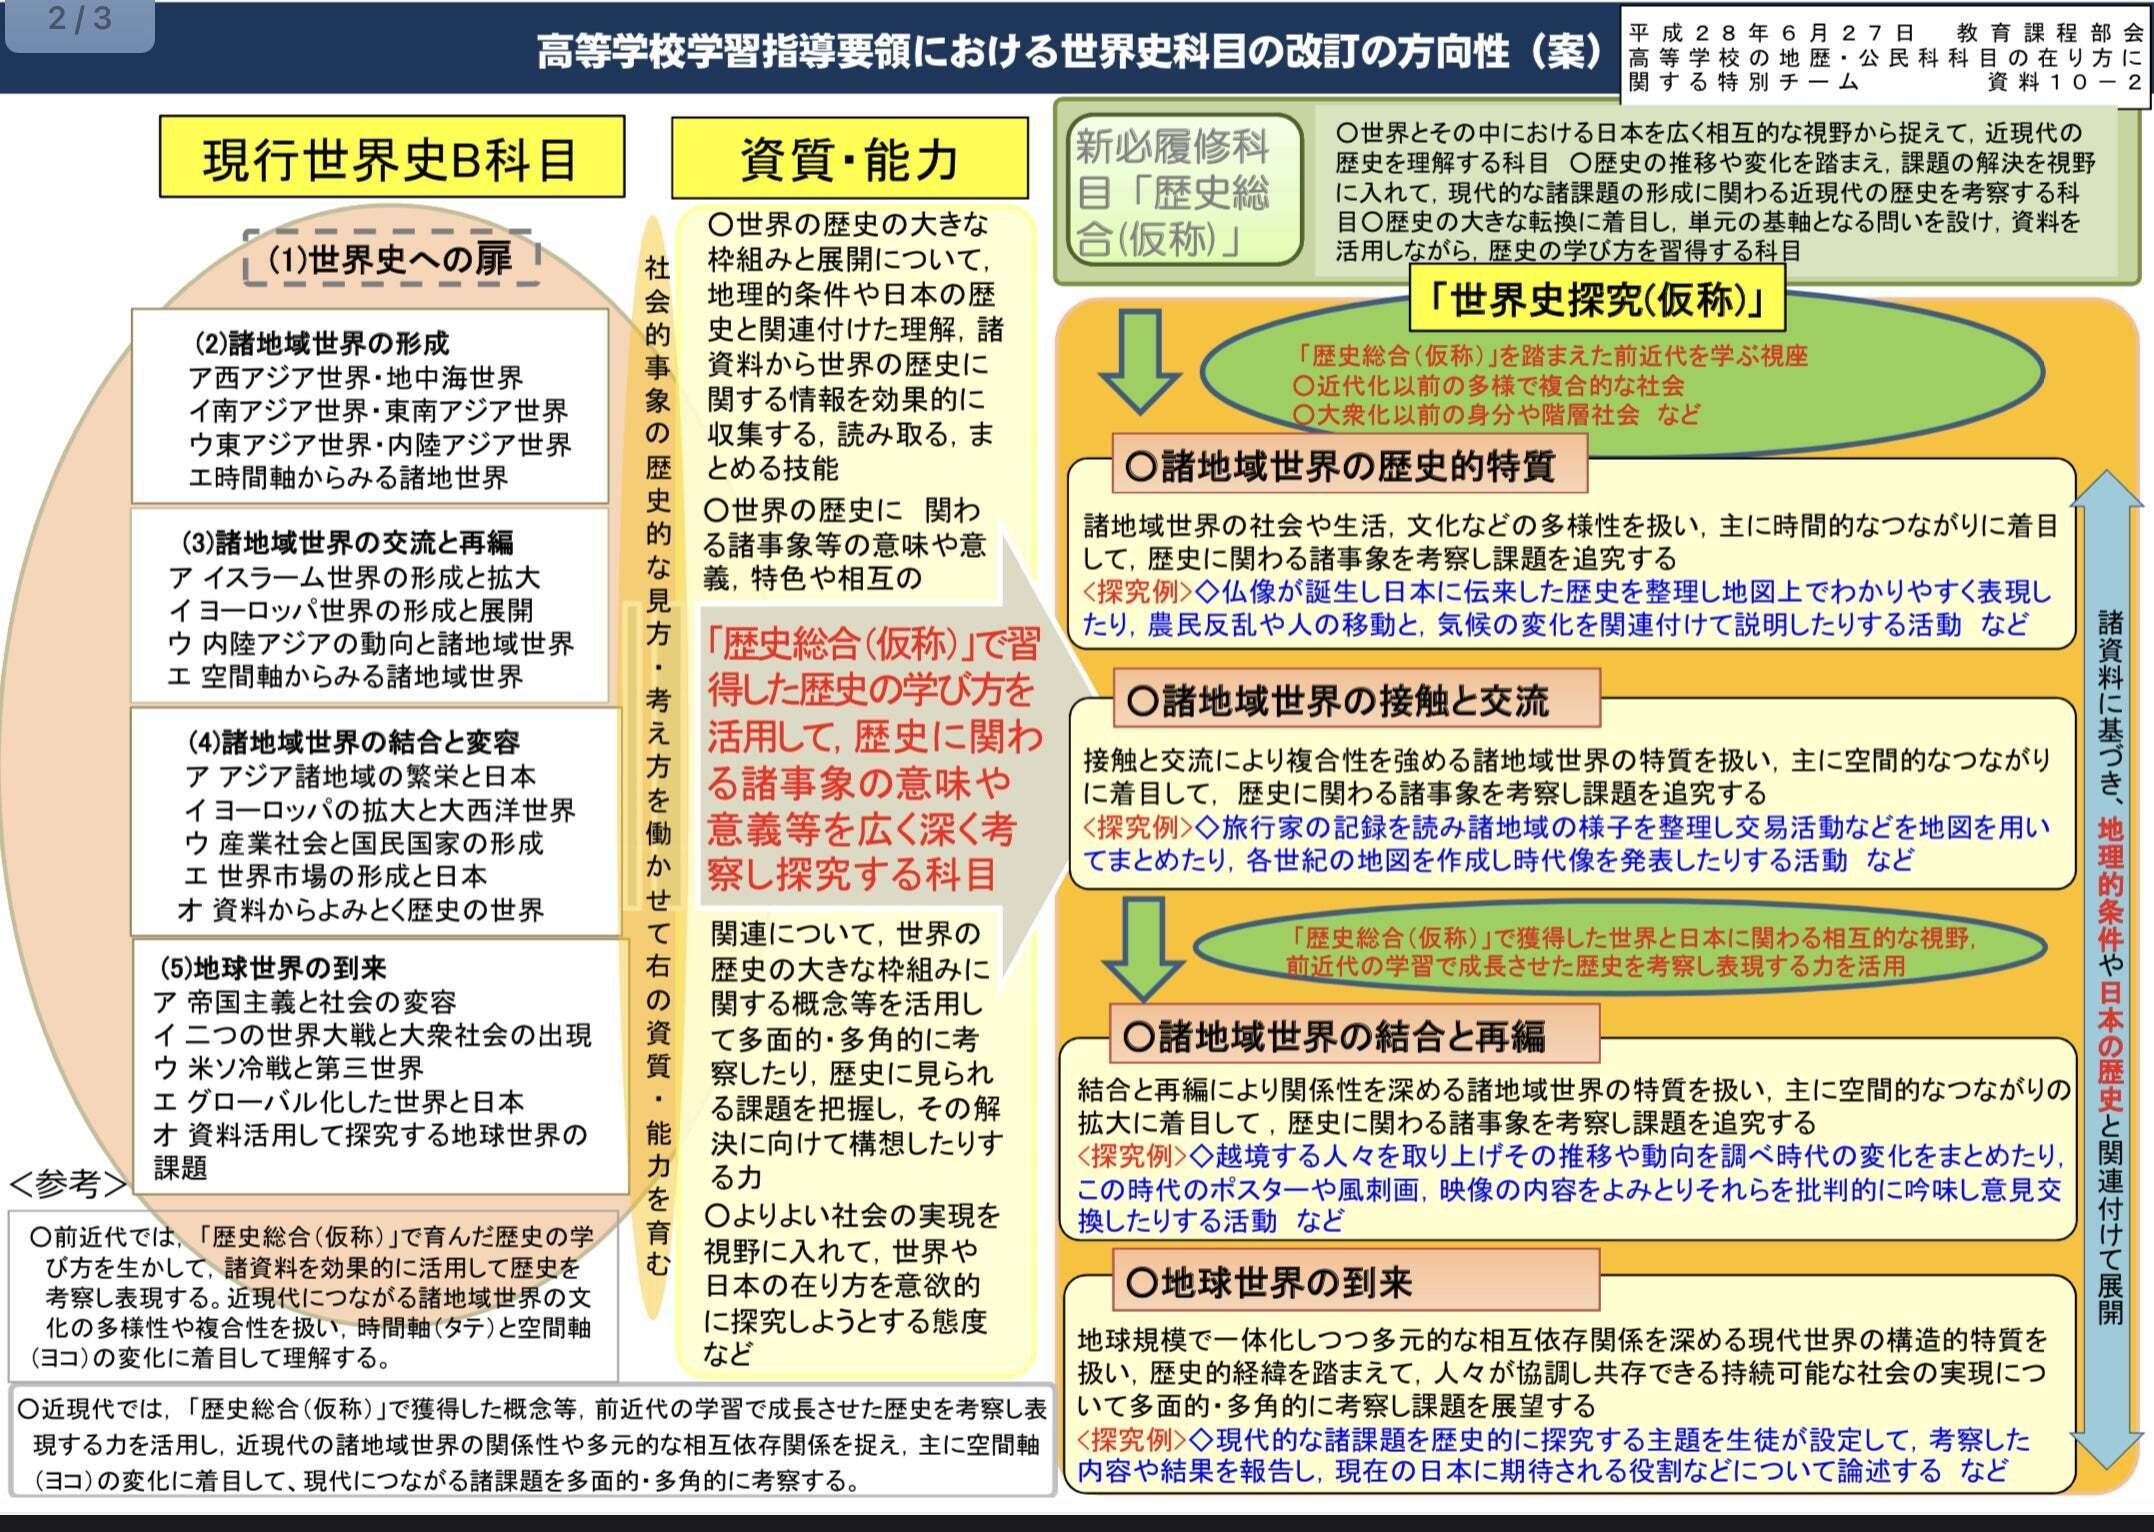 【年表】「歴史総合」の歴史—日本における高校世界史の変遷 